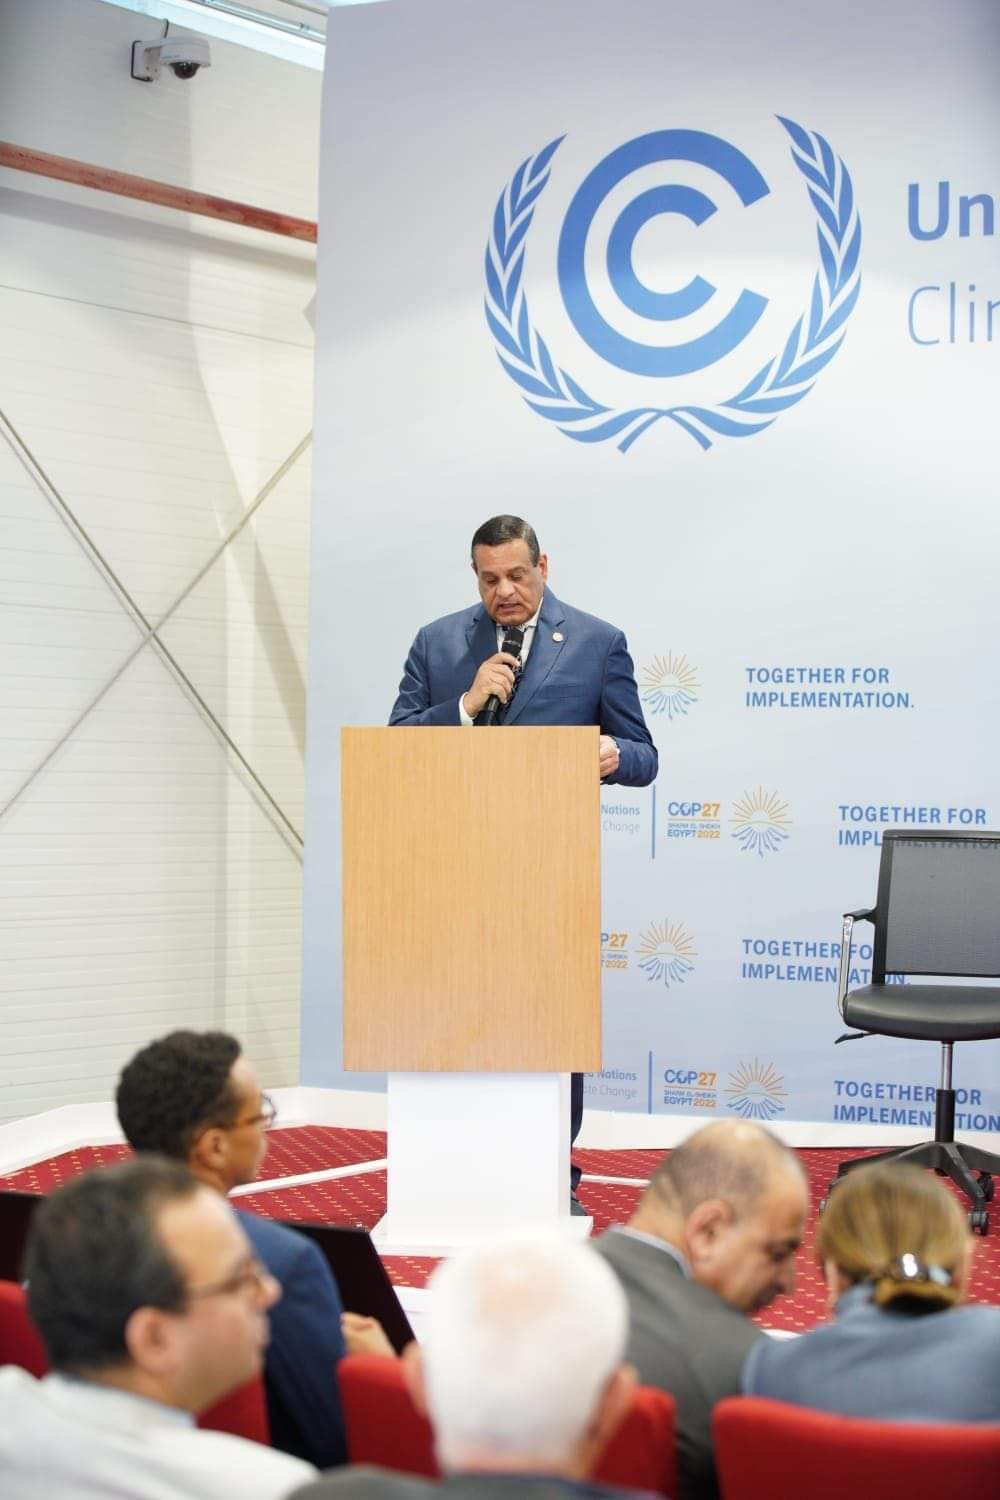 وزير التنمية المحلية يشارك في جلسة "حياة كريمة لإفريقيا" قادرة على الصمود في سياق تغير المناخ